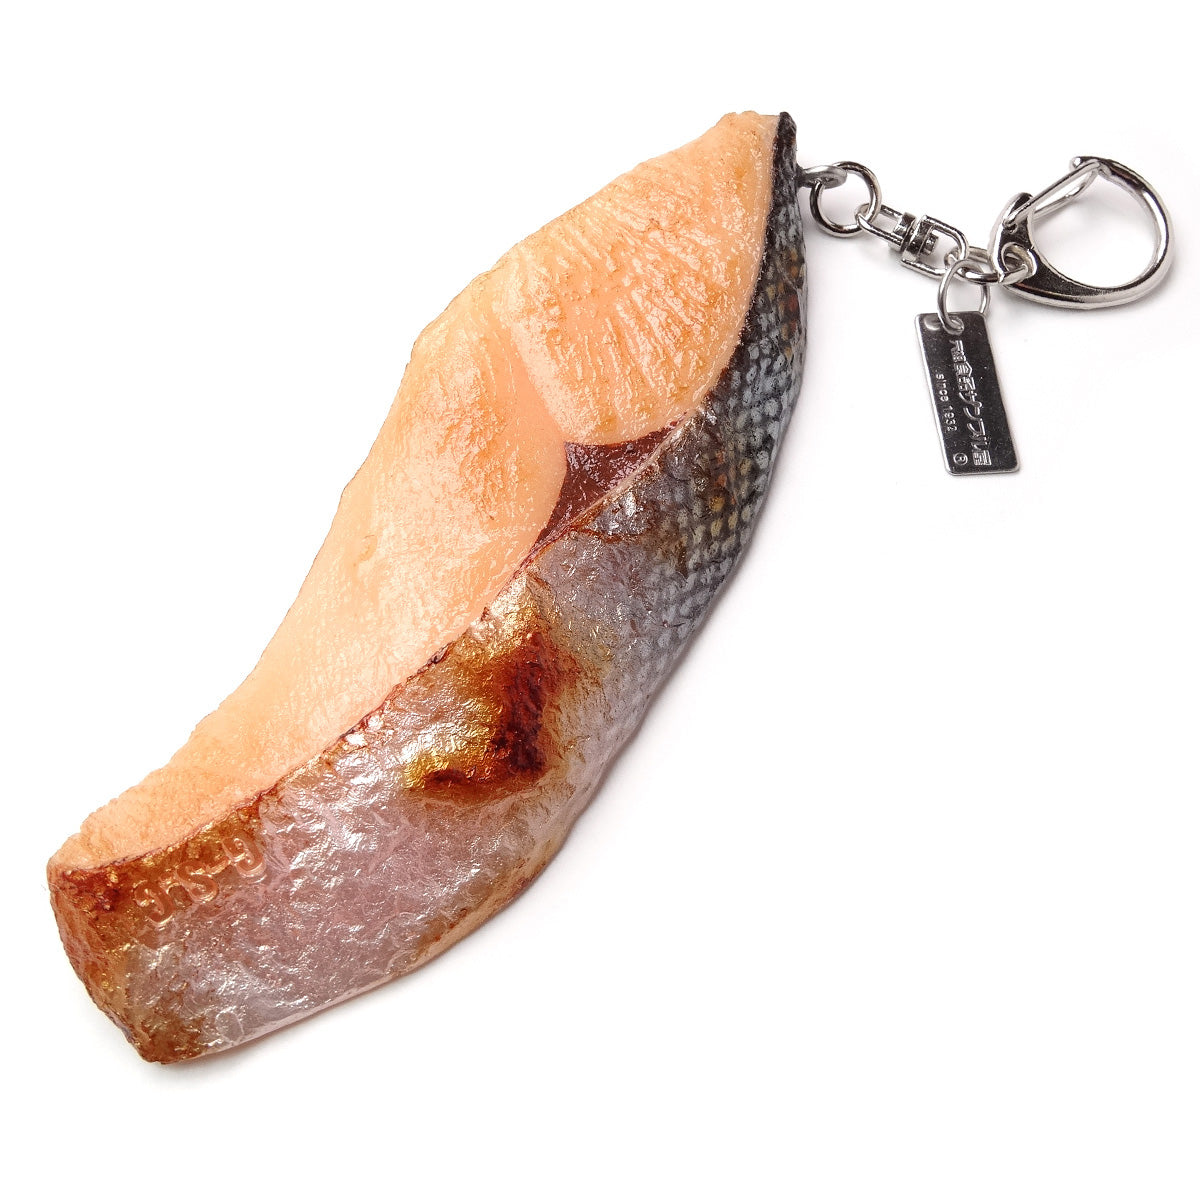 これは元祖食品サンプル屋「キーリング 焼魚鮭(中)」の商品画像です。